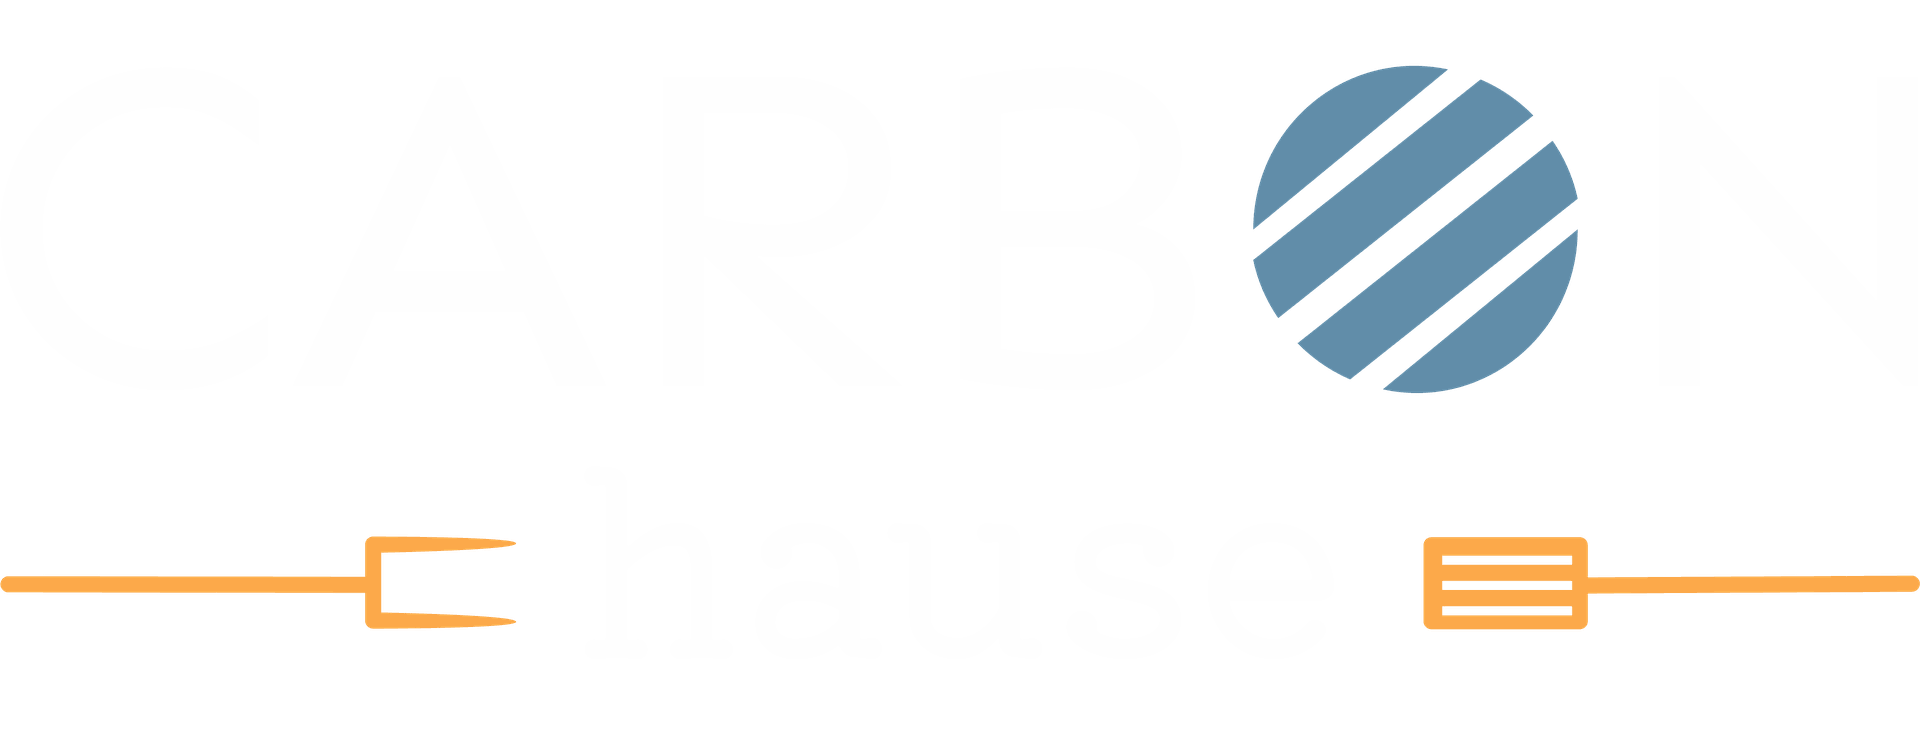 CarbonHause